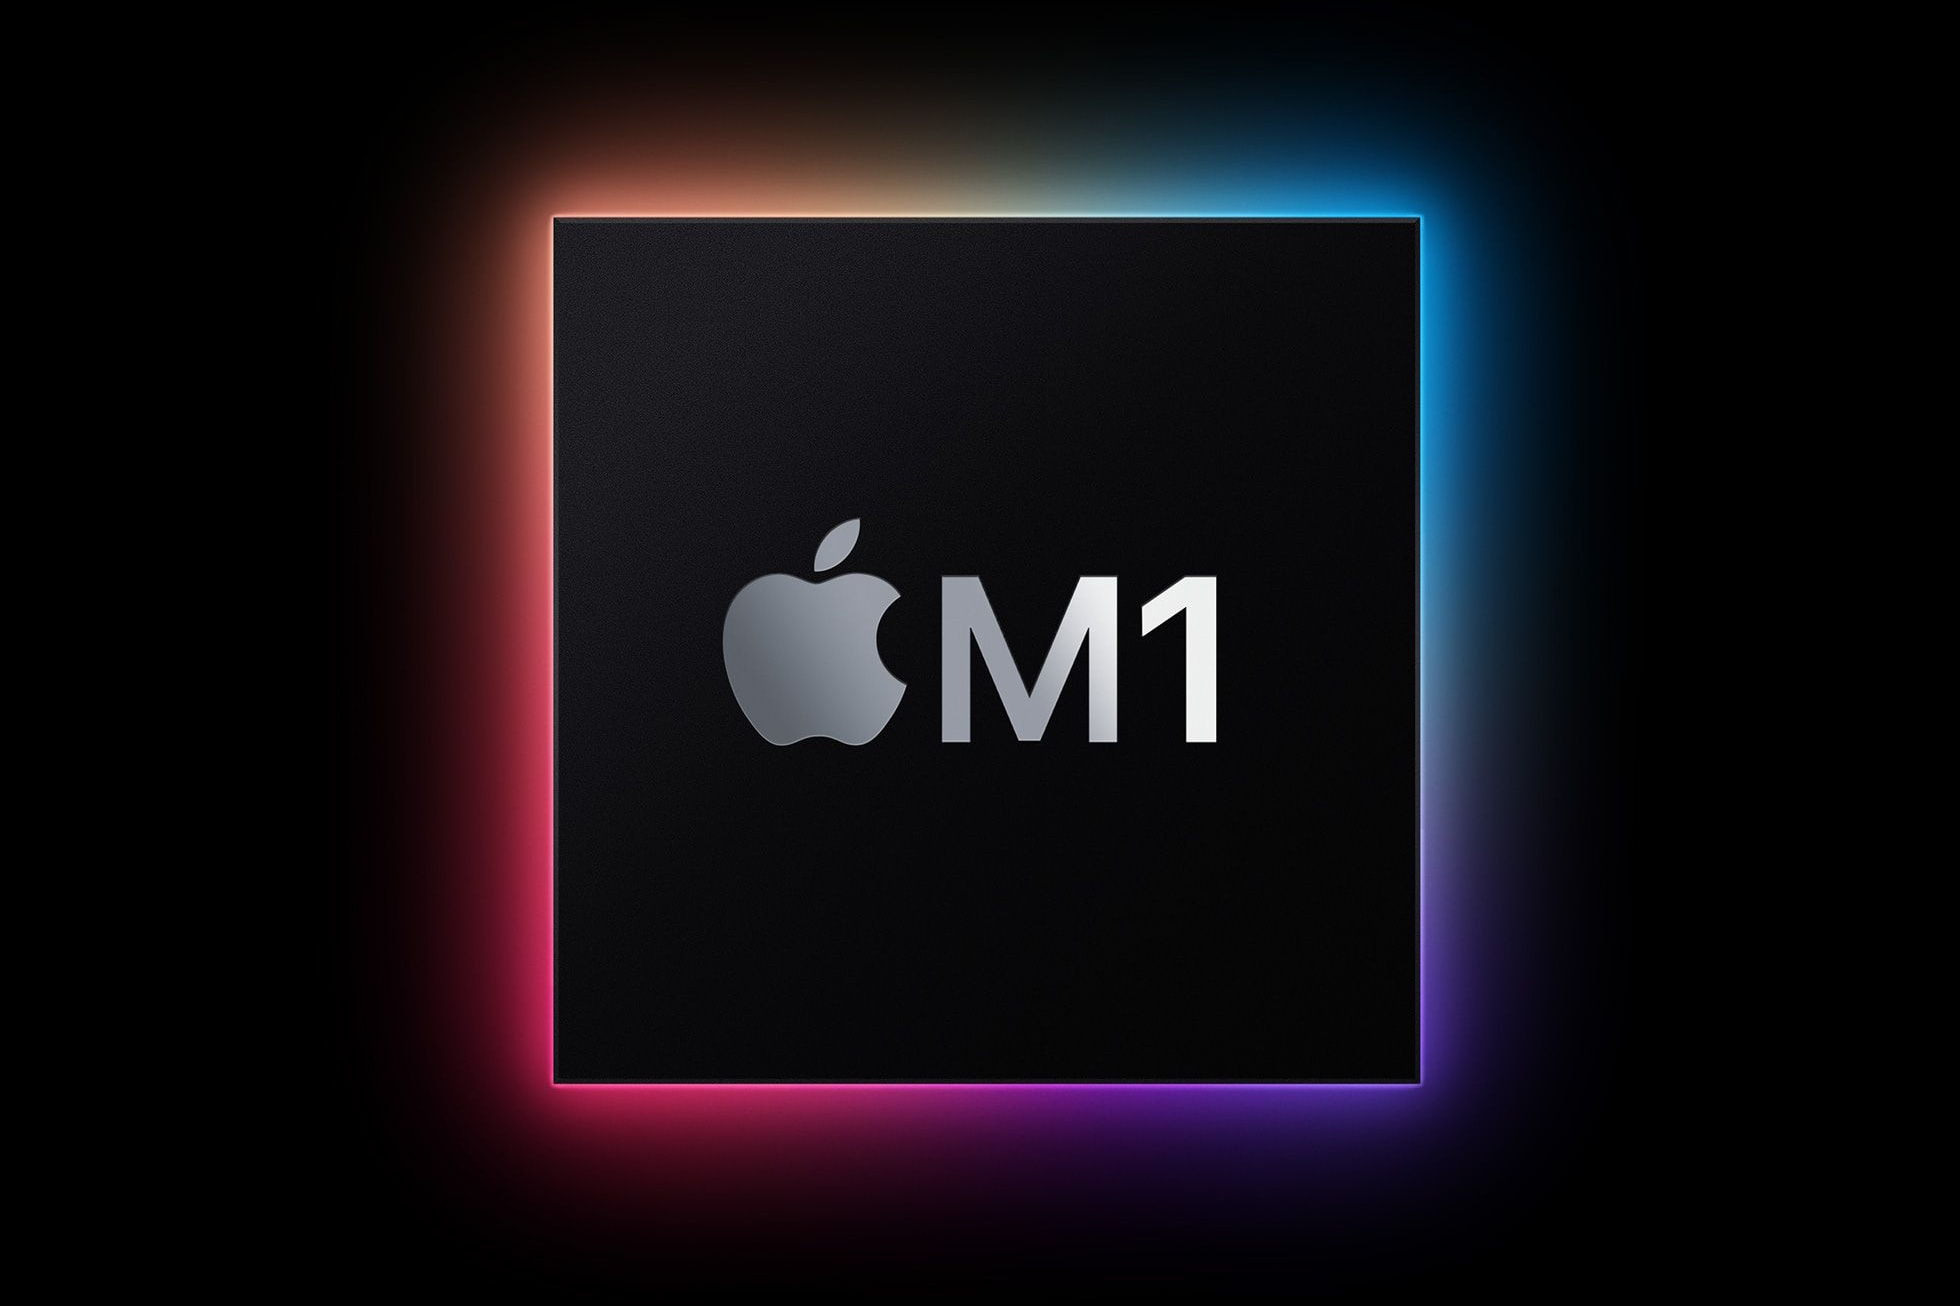 애플, M1 칩보다 더 강력한 성능의 M1X 칩 준비하고 있다?, 아이맥, 맥북, 인텔, 애플 실리콘, 27인치, 맥북 프로 16인치, 2021년 맥북 프로, 랩톱, 노트북 추천